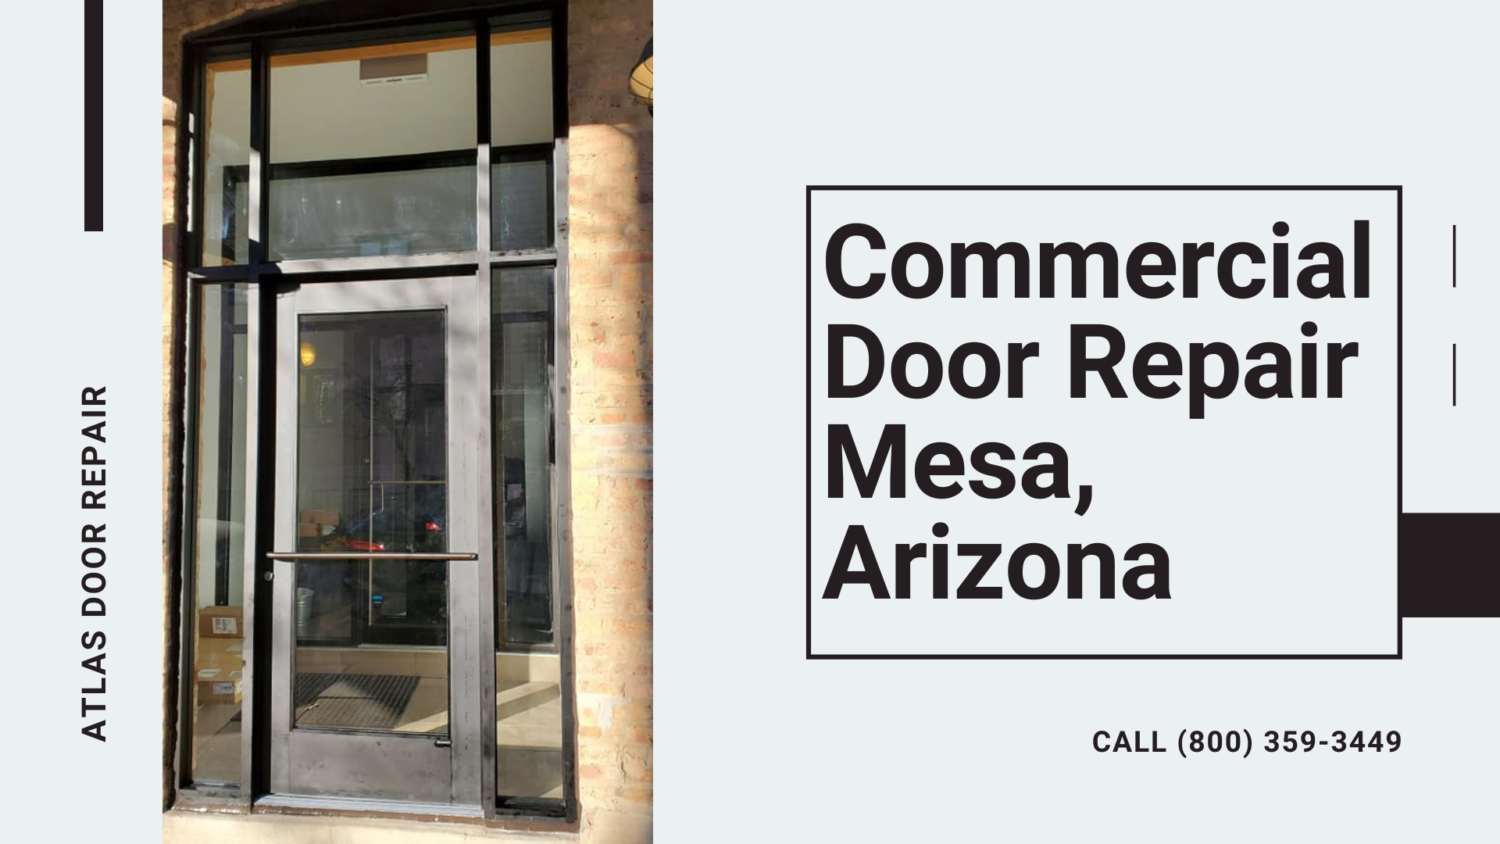 Commercial Door Repair in Mesa AZ